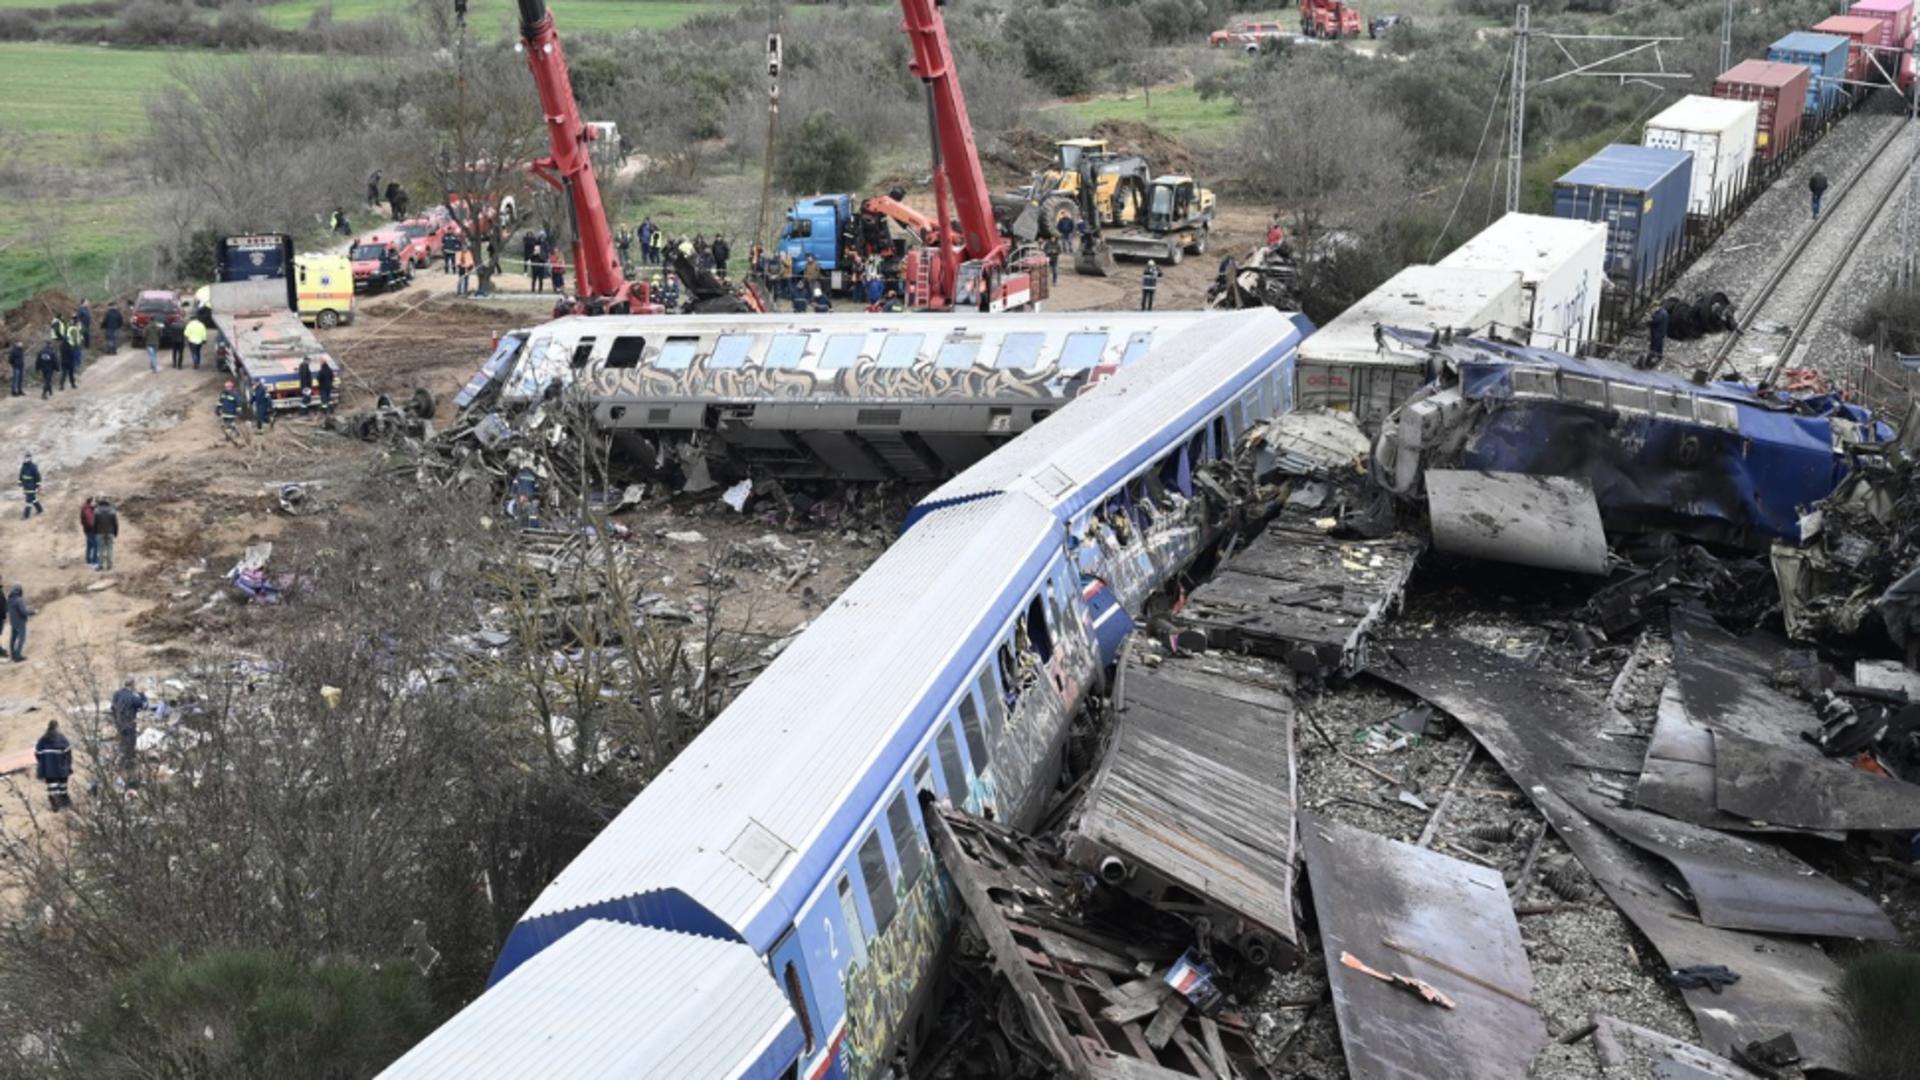 Ministerul de Externe anunță că niciun român nu este implicat în accidentul feroviar din Grecia